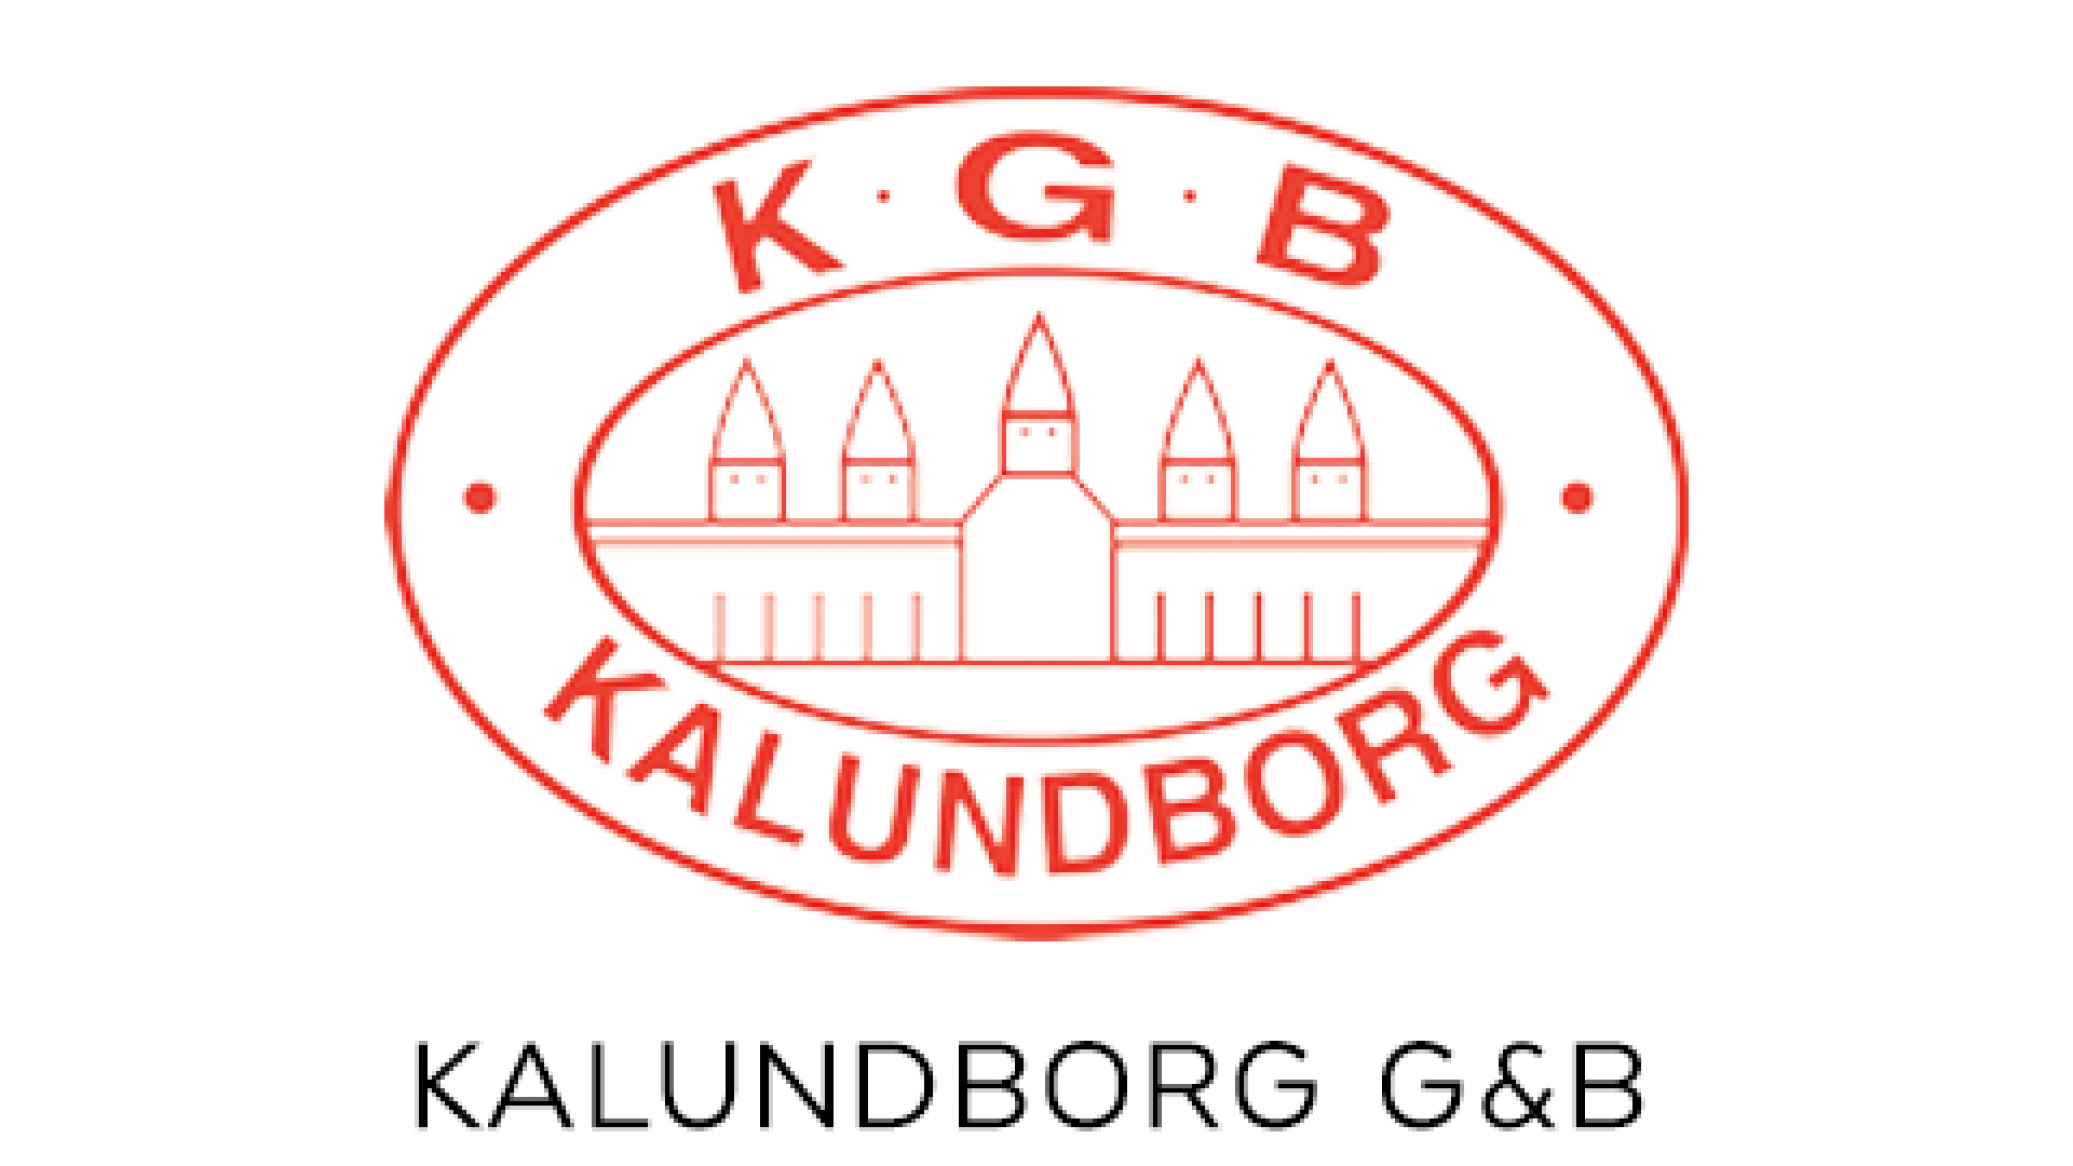 Kalundborg G&B